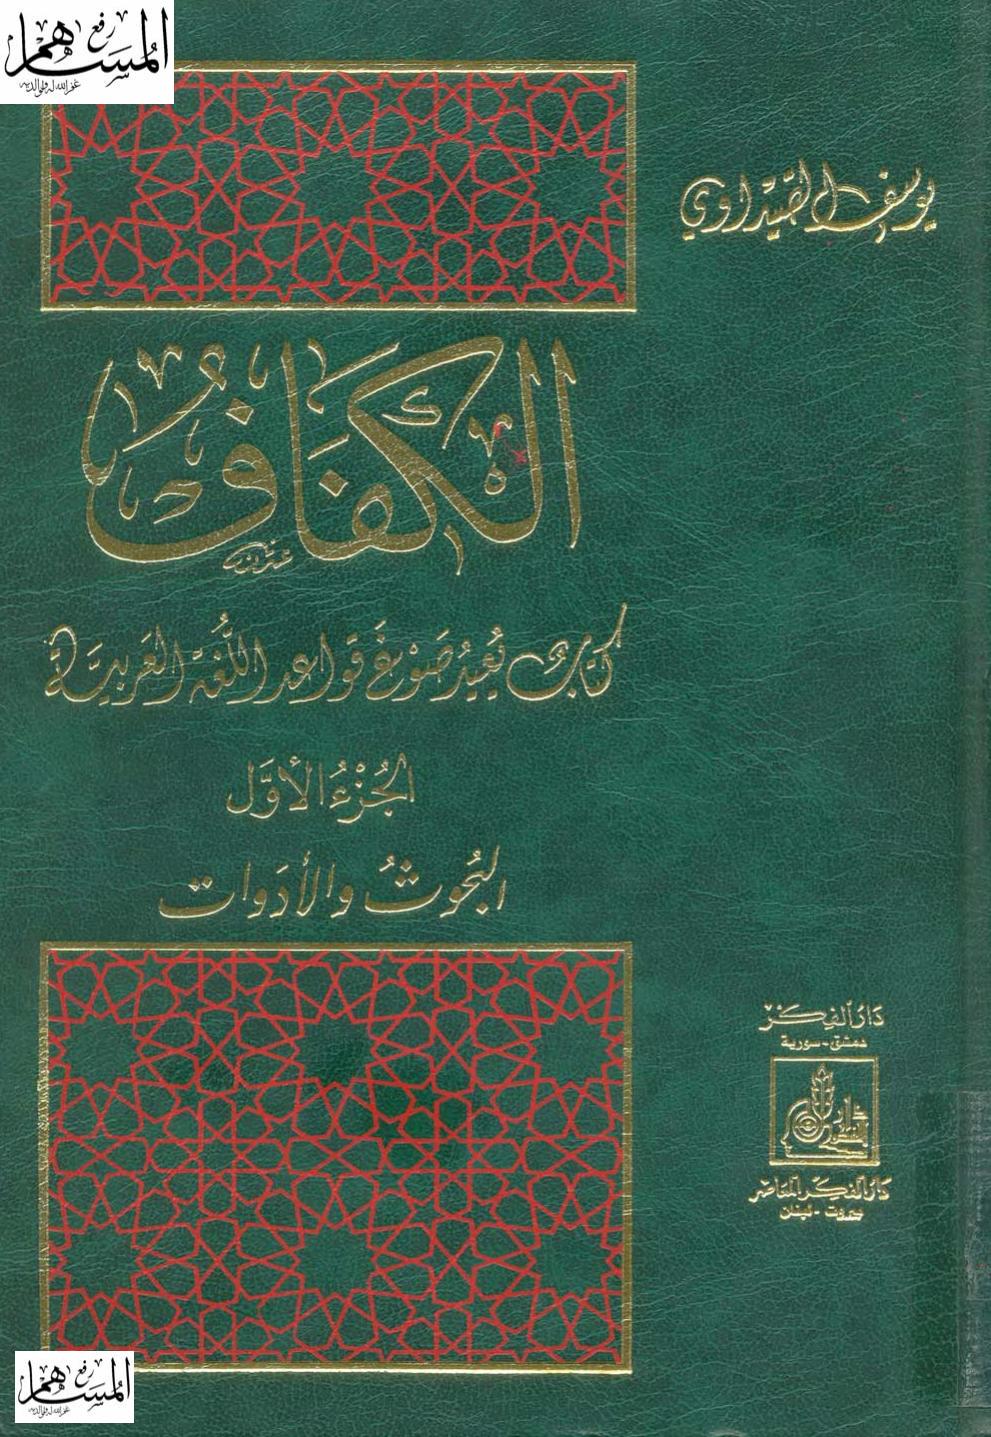 الكفاف: كتاب يعيد صوغ قواعد اللغة العربية